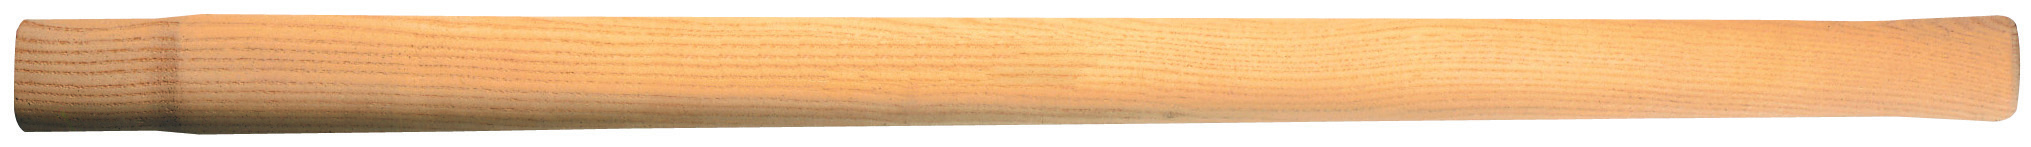 Vorschlaghammer-Stiel Esche 900mm 8/10kg Hammer